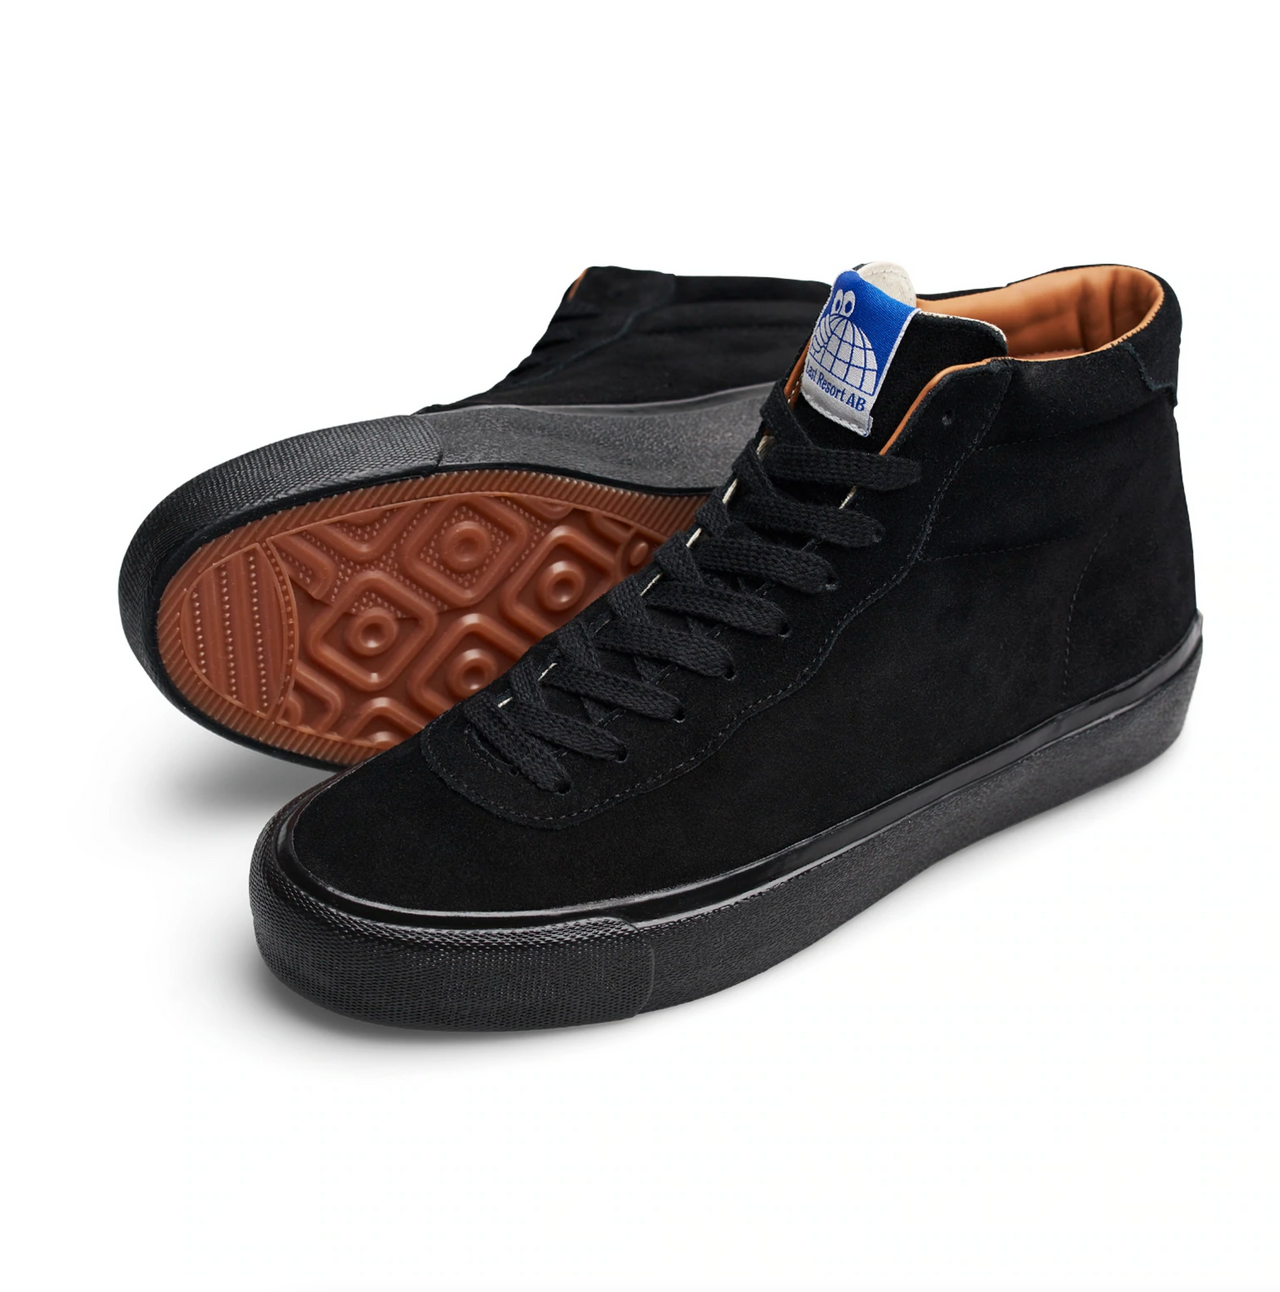 Last Resort AB VM001 Suede Hi Shoes - Black/Black